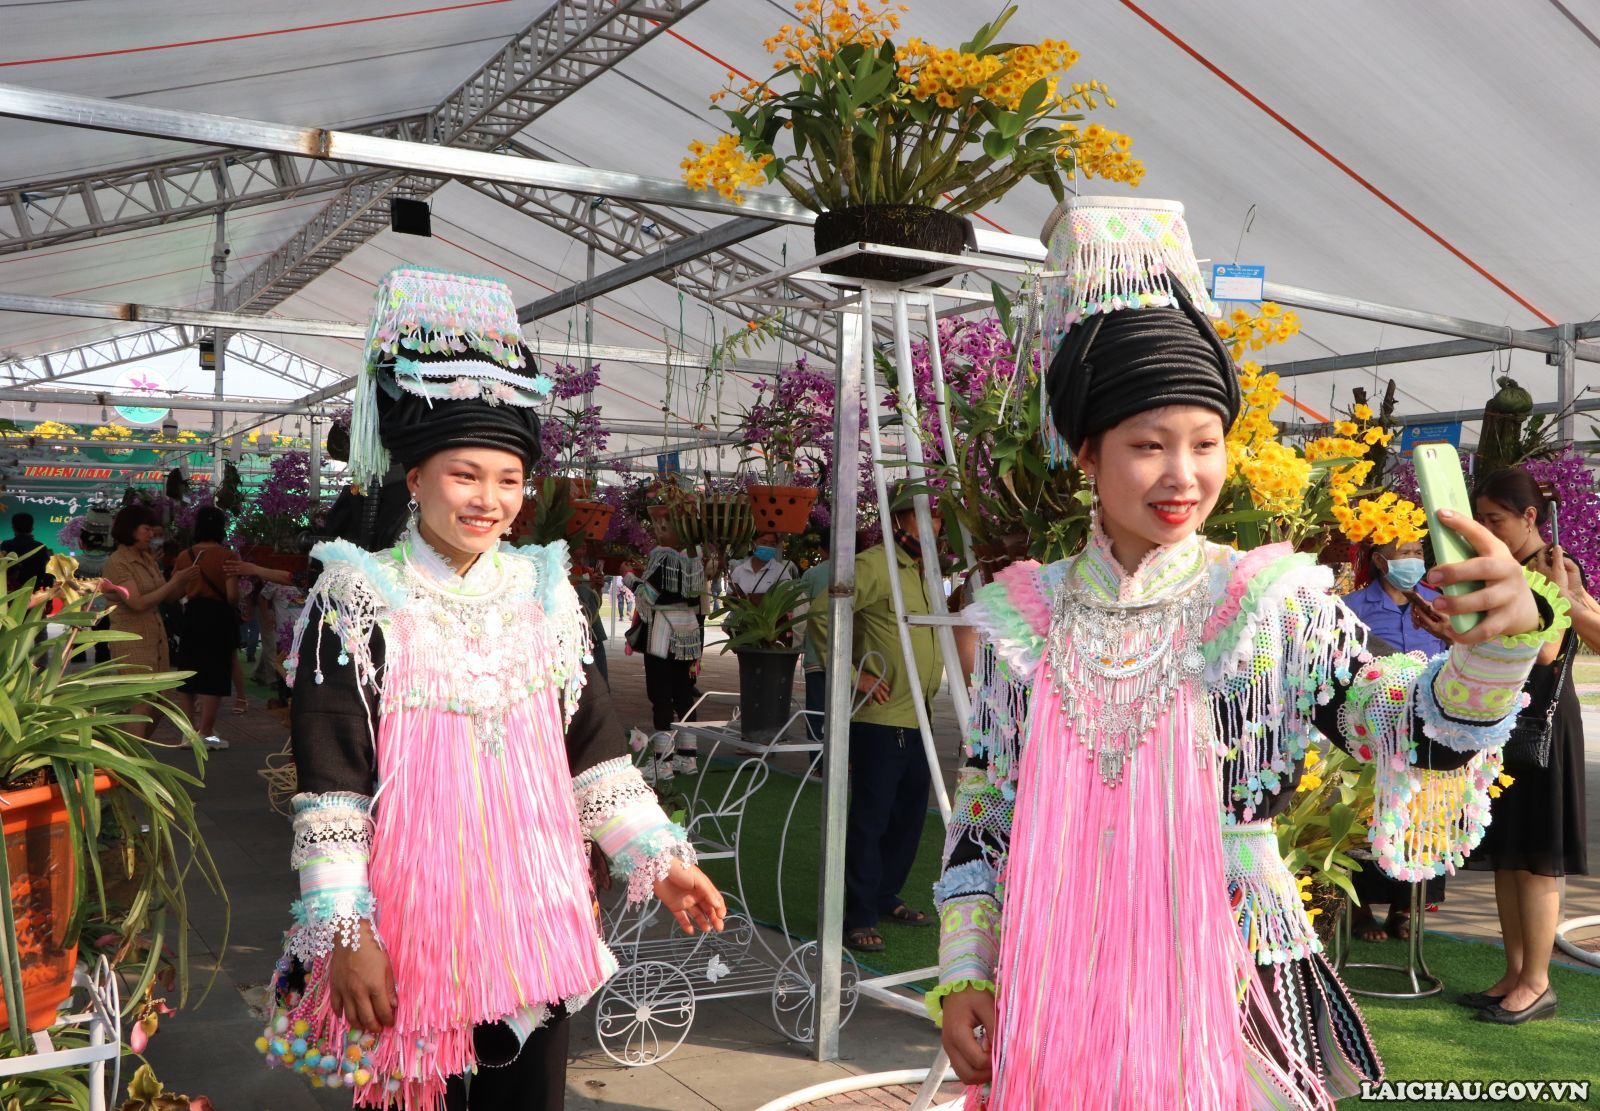 Các cô gái dân tộc Dao cùng ghi lại những khoảnh khắc đẹp khi đi chơi lễ hội... (Ảnh: Kim Anh)